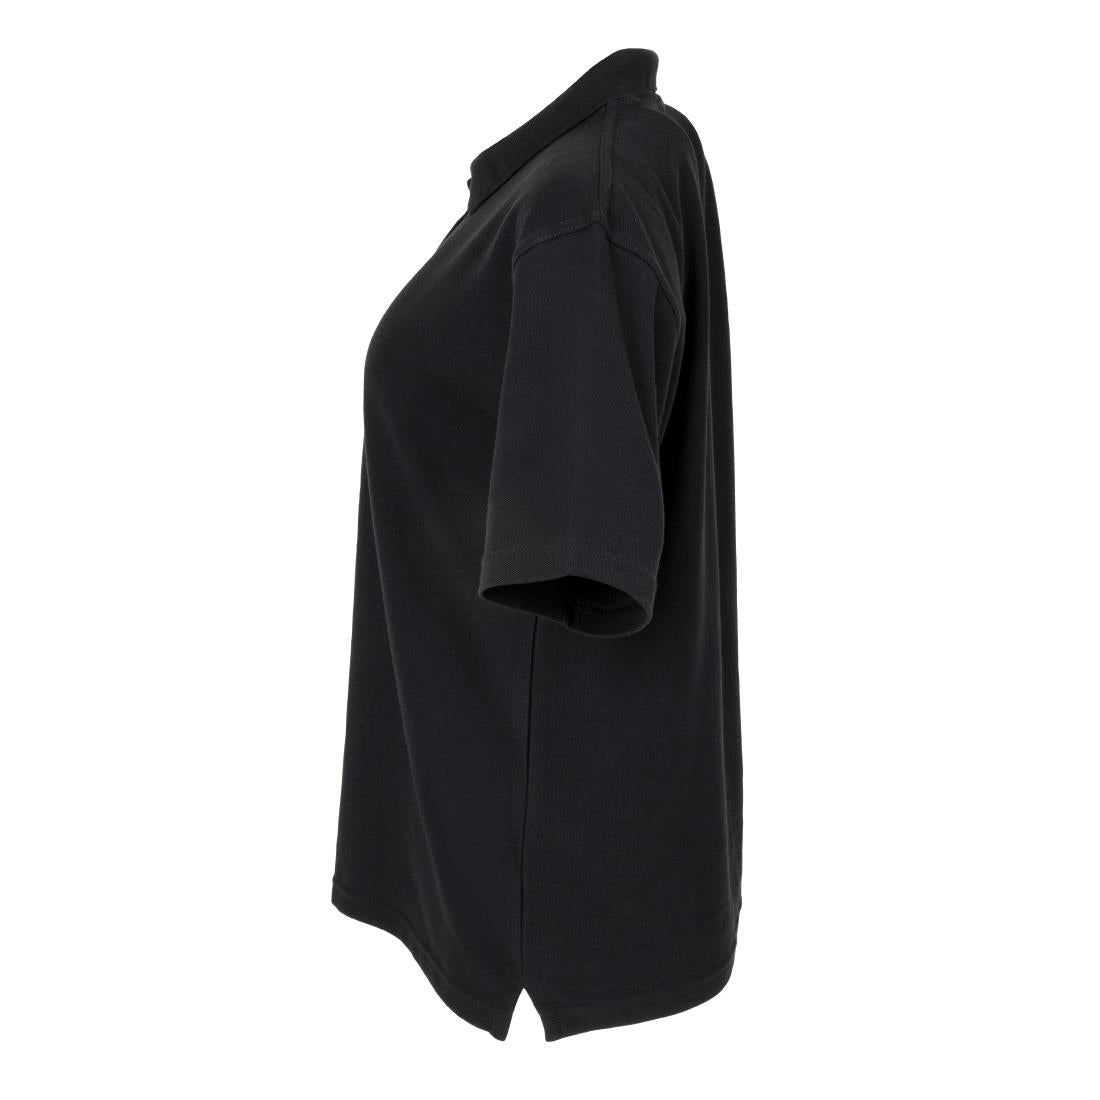 BB474-XL Ladies Polo Shirt Black XL